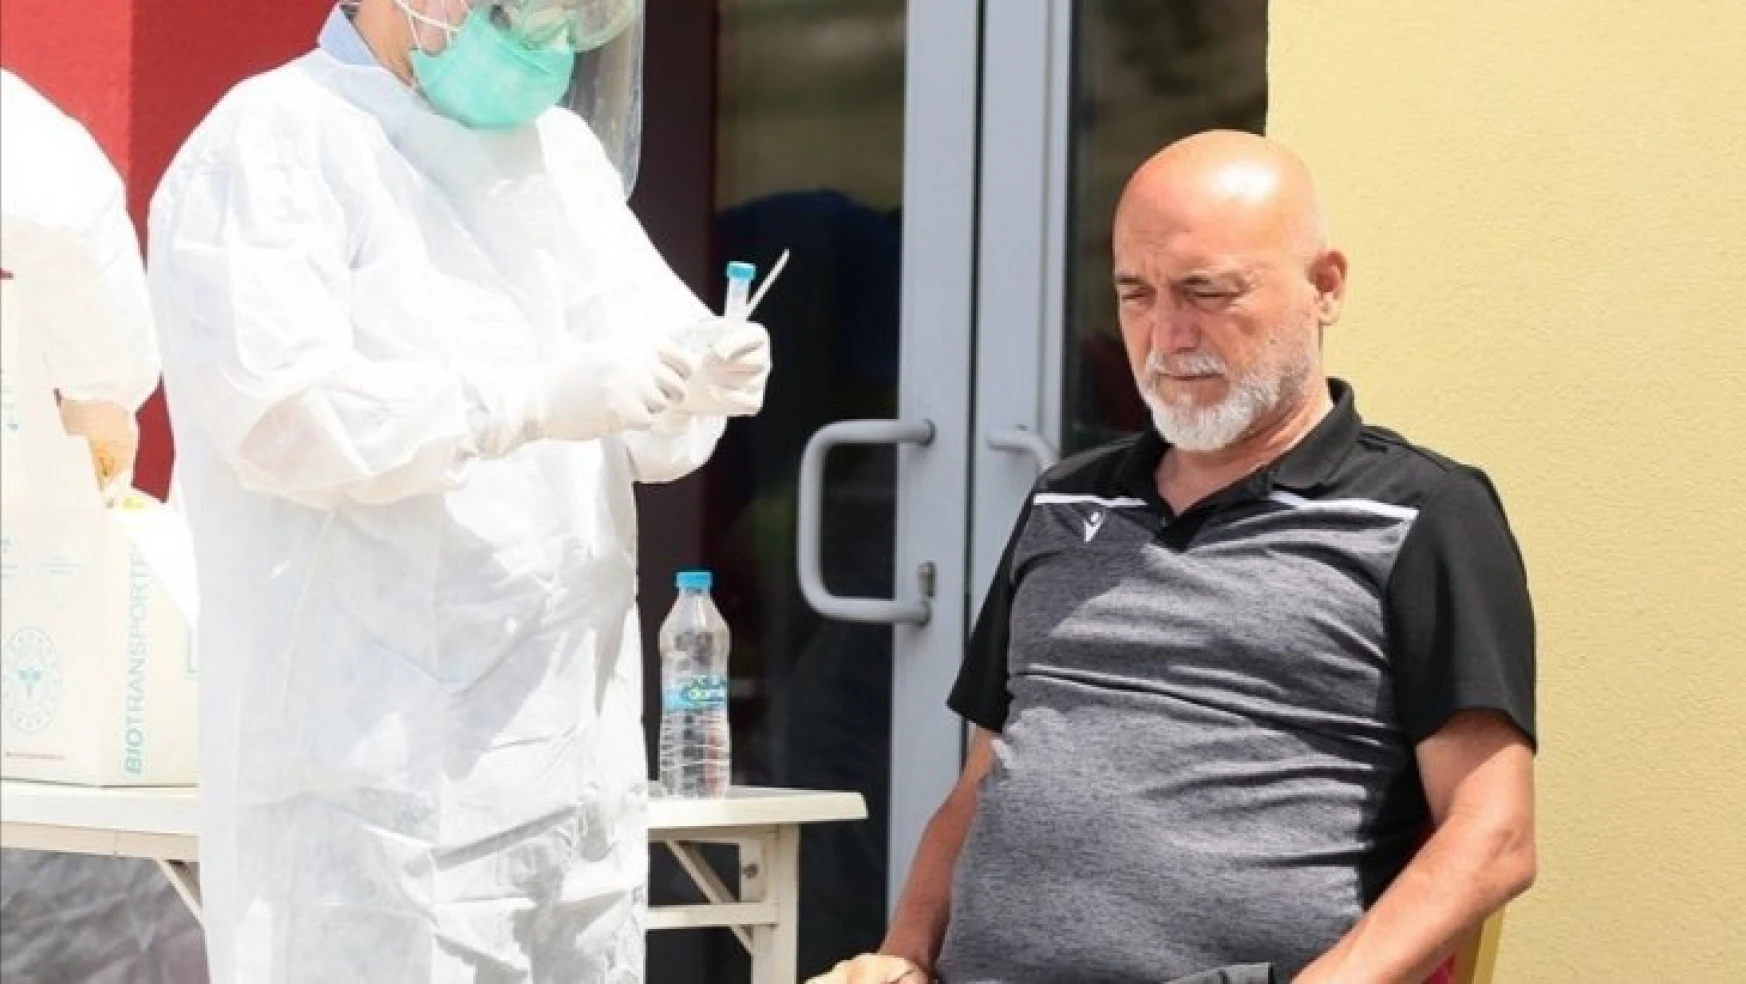 Yeni Malatyaspor'da 2 kişinin korona virüs testi pozitif çıktı